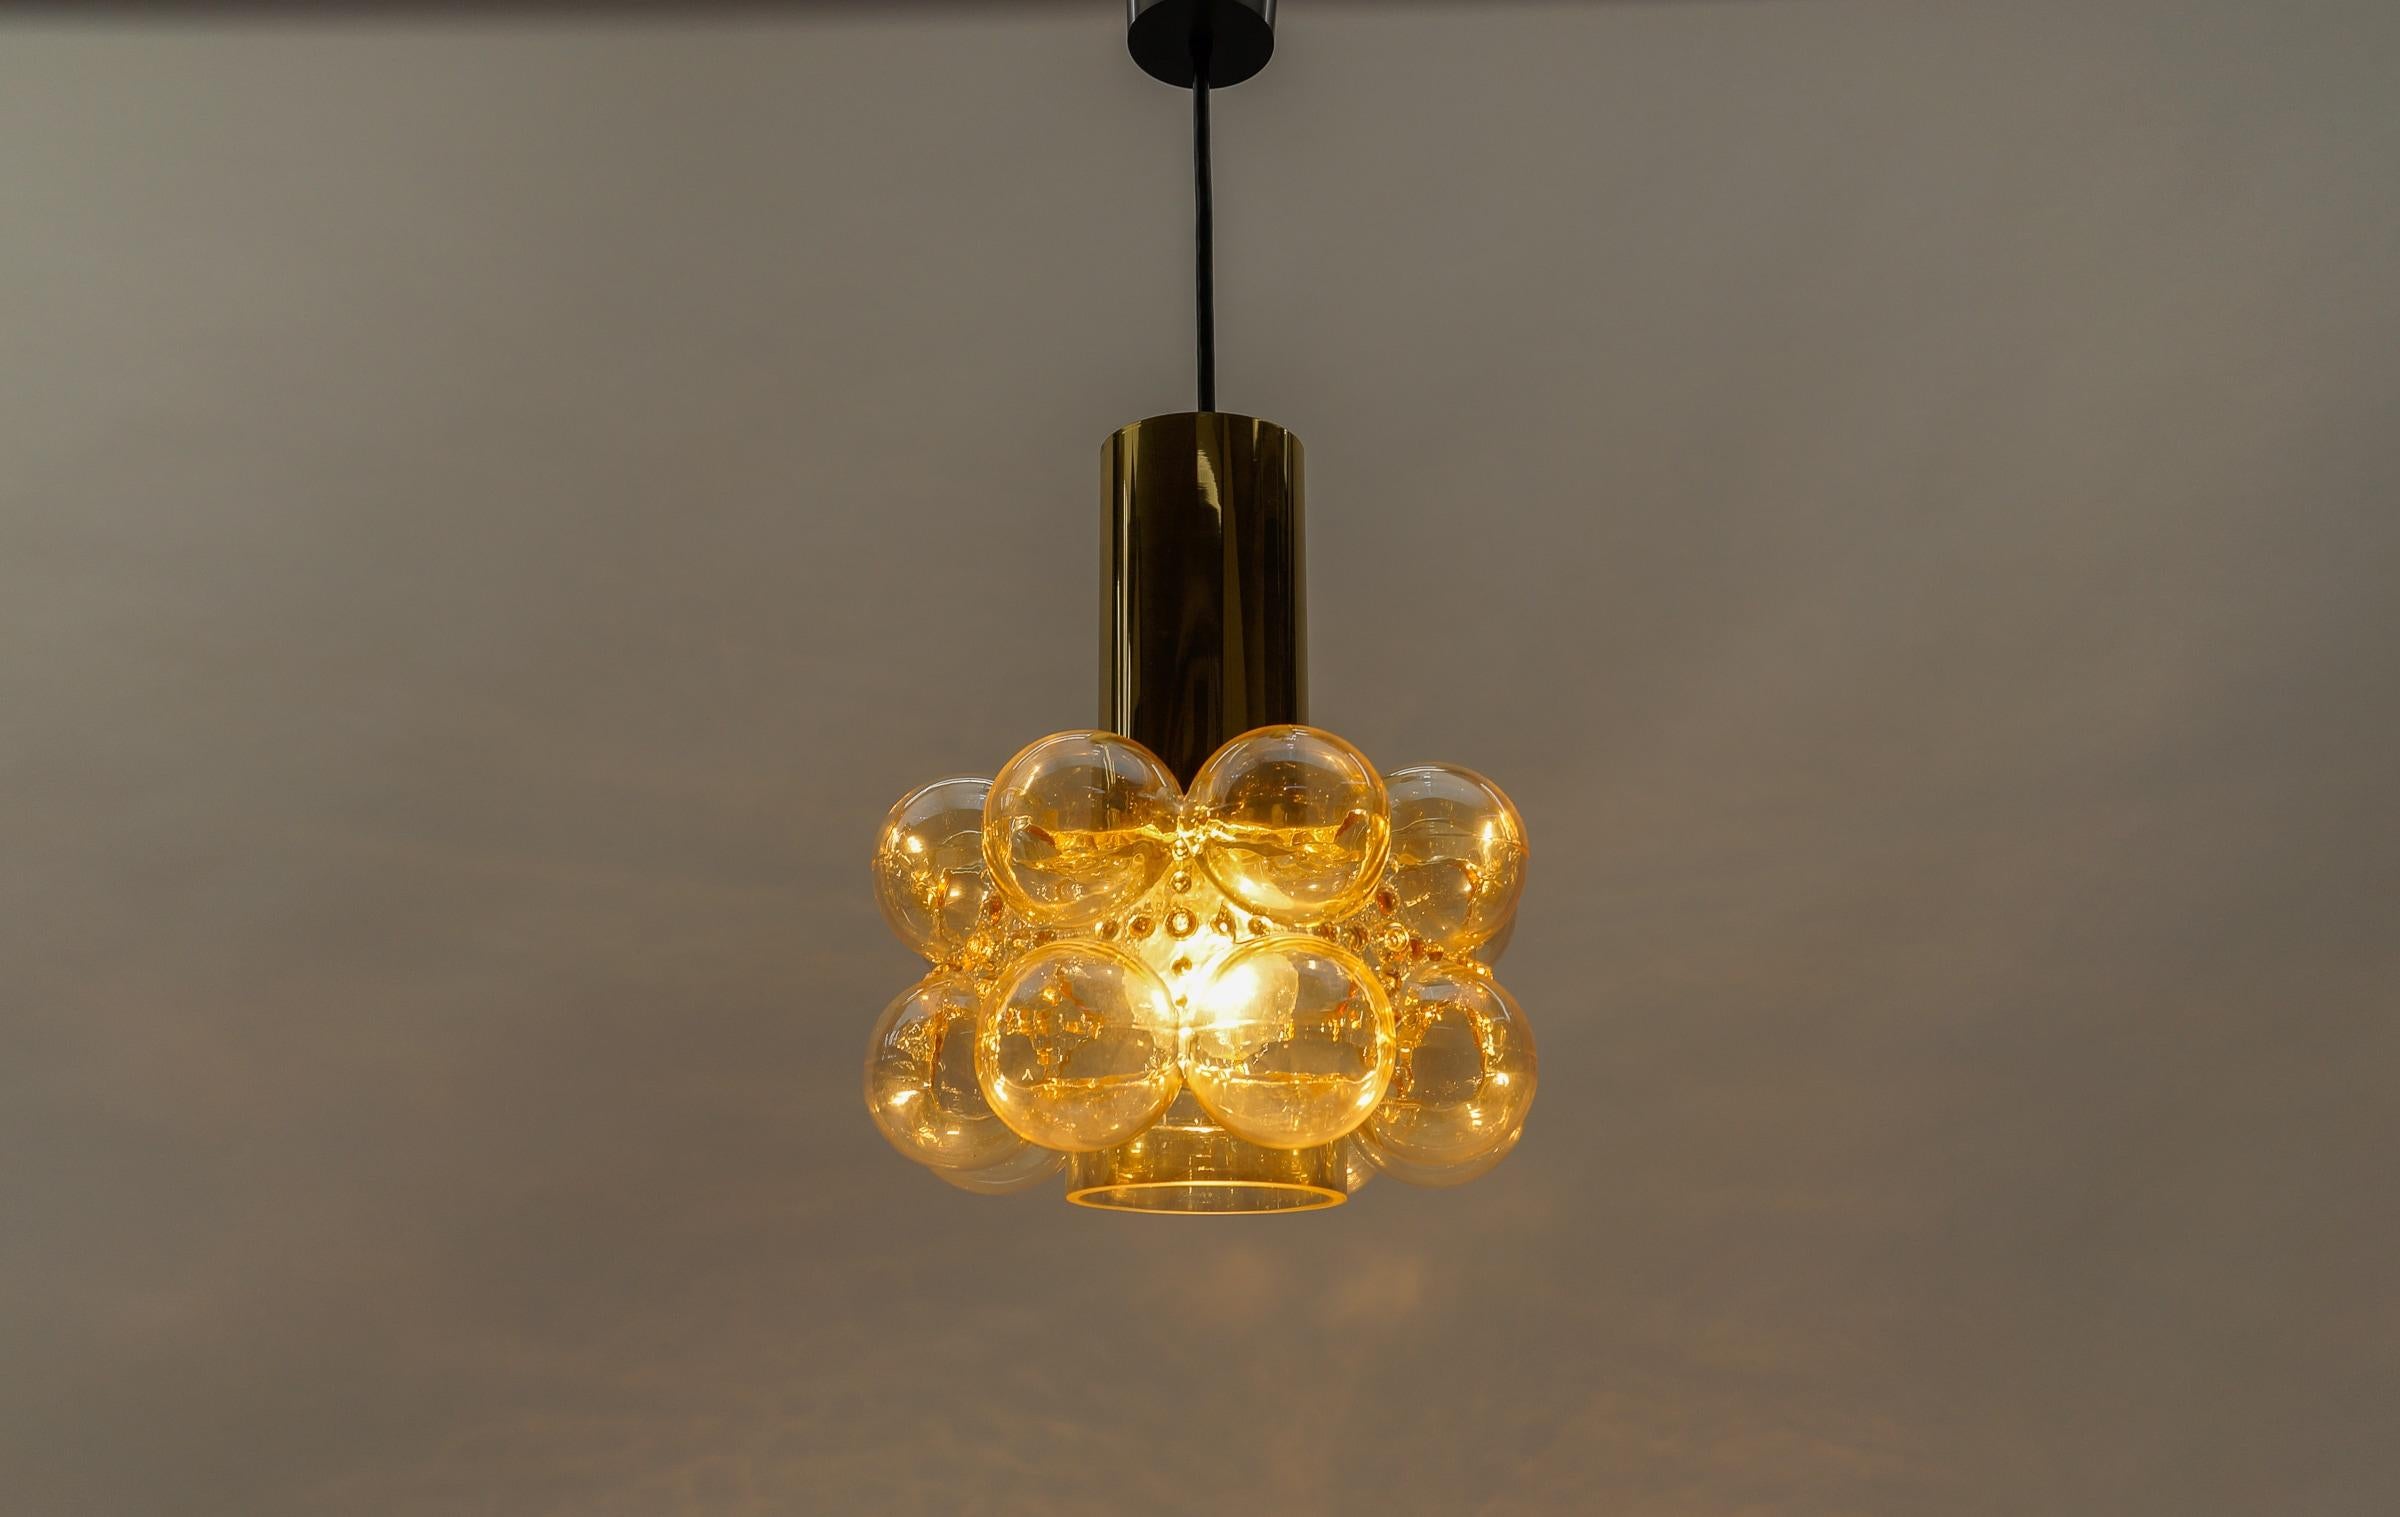 Plafonnier en verre bullé ambré d'Helena Tynell pour Limburg, Allemagne, années 1960

Dimensions
Hauteur : 50 cm (23,62 in.)
Diamètre : 25 cm (9,44 in.)

Le luminaire nécessite 1 ampoule standard E27 de 60W max.

Les ampoules ne sont pas incluses.